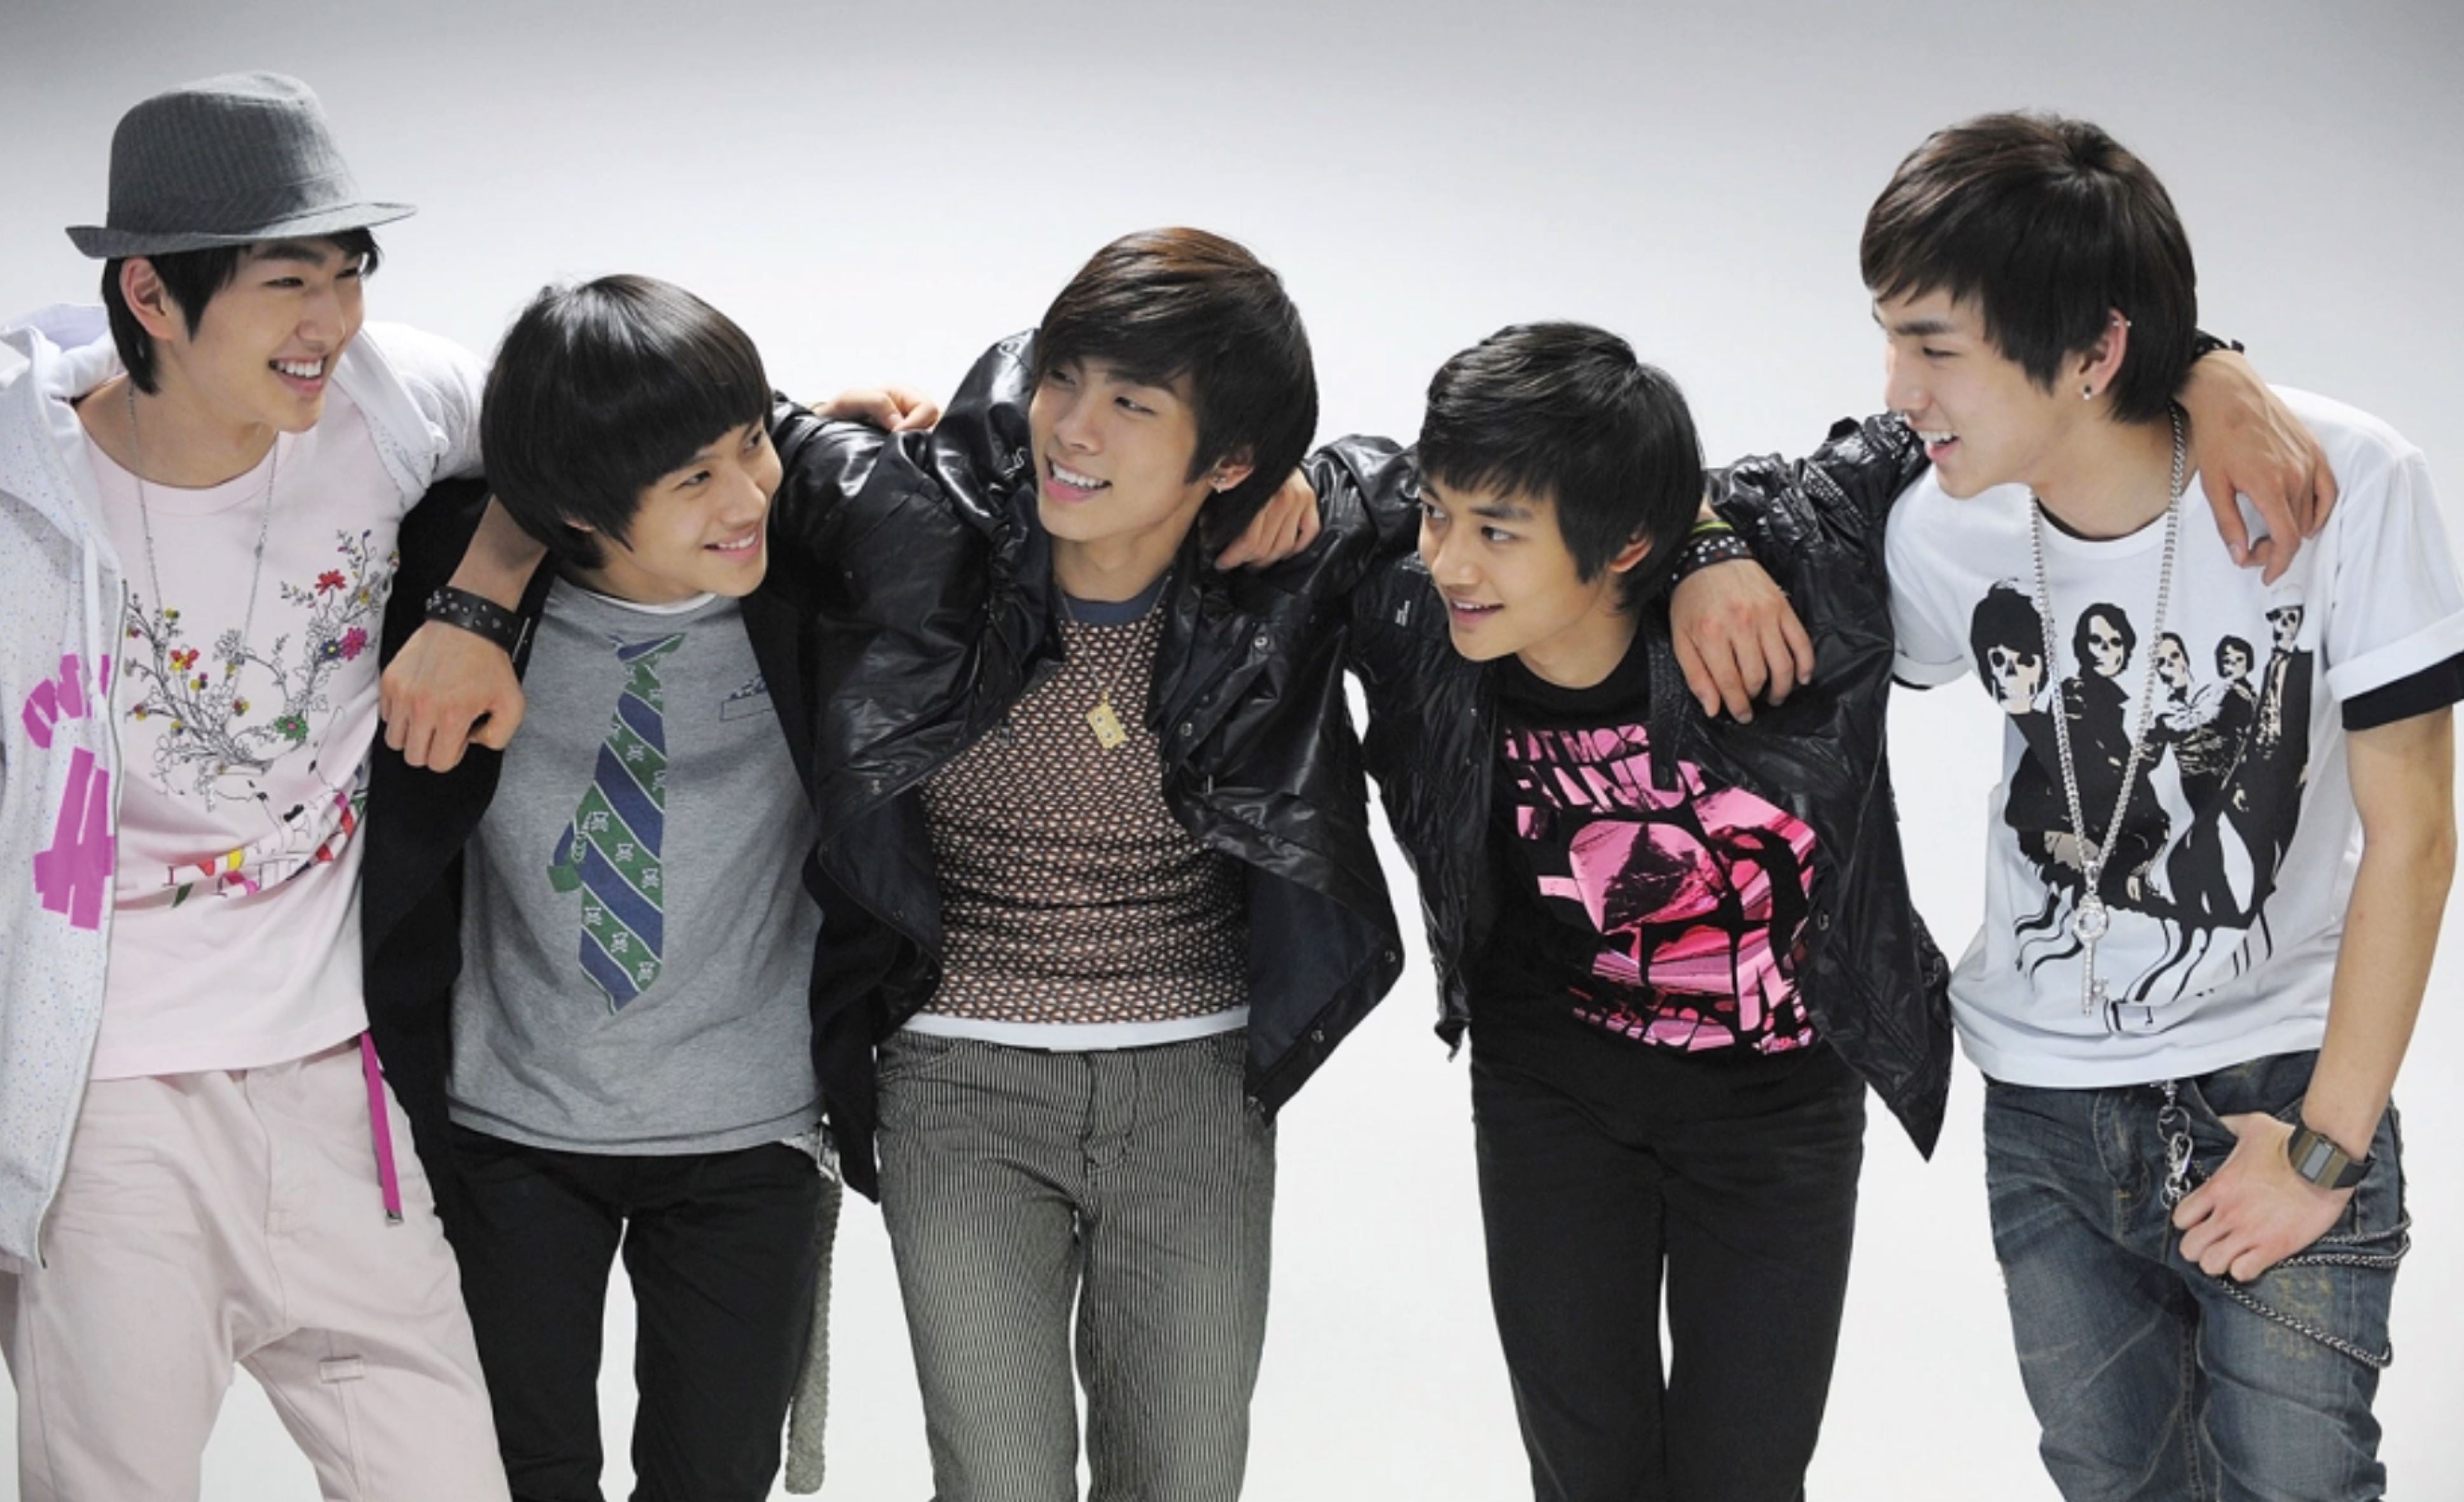 Das ist SHINee! Onew, Jonghyun, Minho, Key und Taemin!